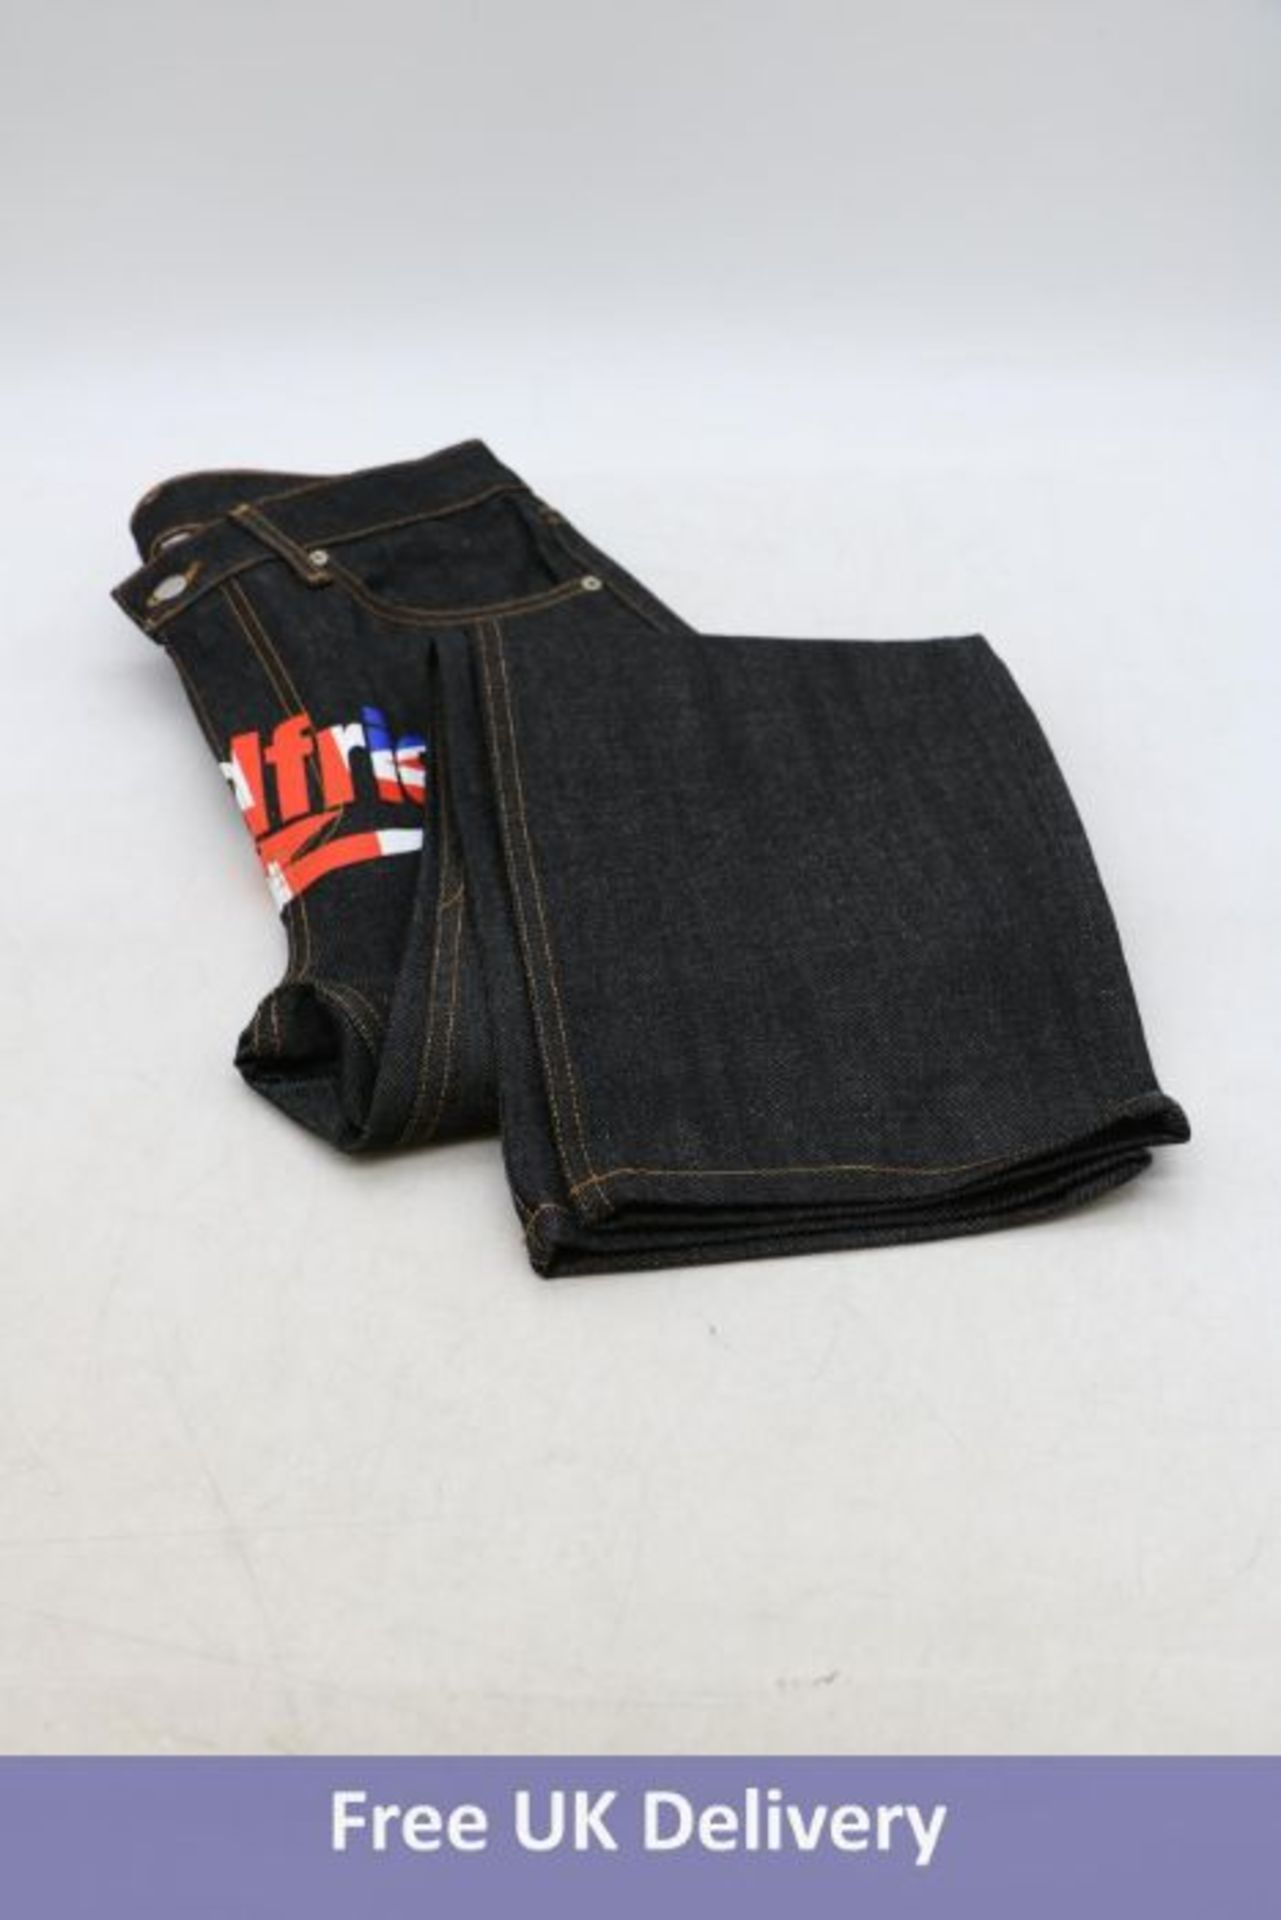 Three BadFriend Men's Streetwear, Y2K Union Jack Denim Jeans, Black, 2x 32W, 1x 34W